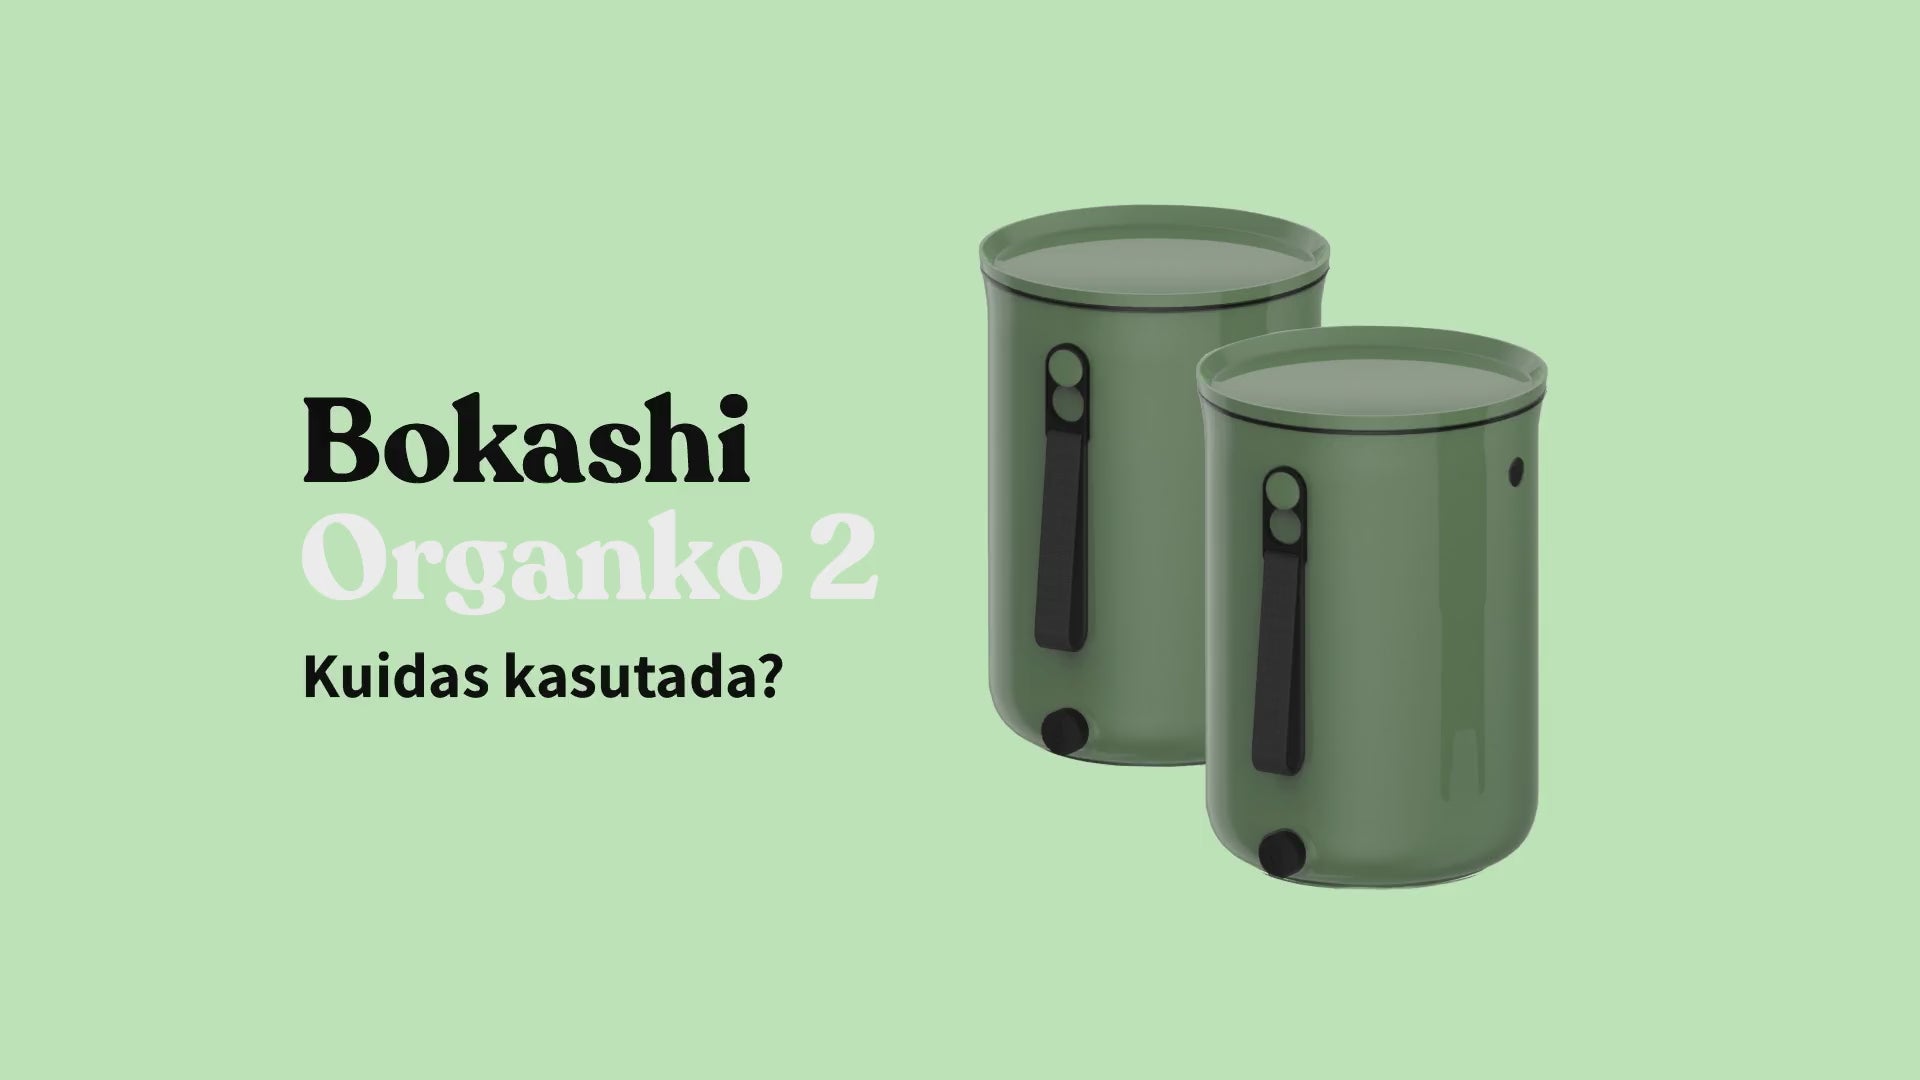 Laadi video: Bokashi Organko 2 - kuidas kasutada?